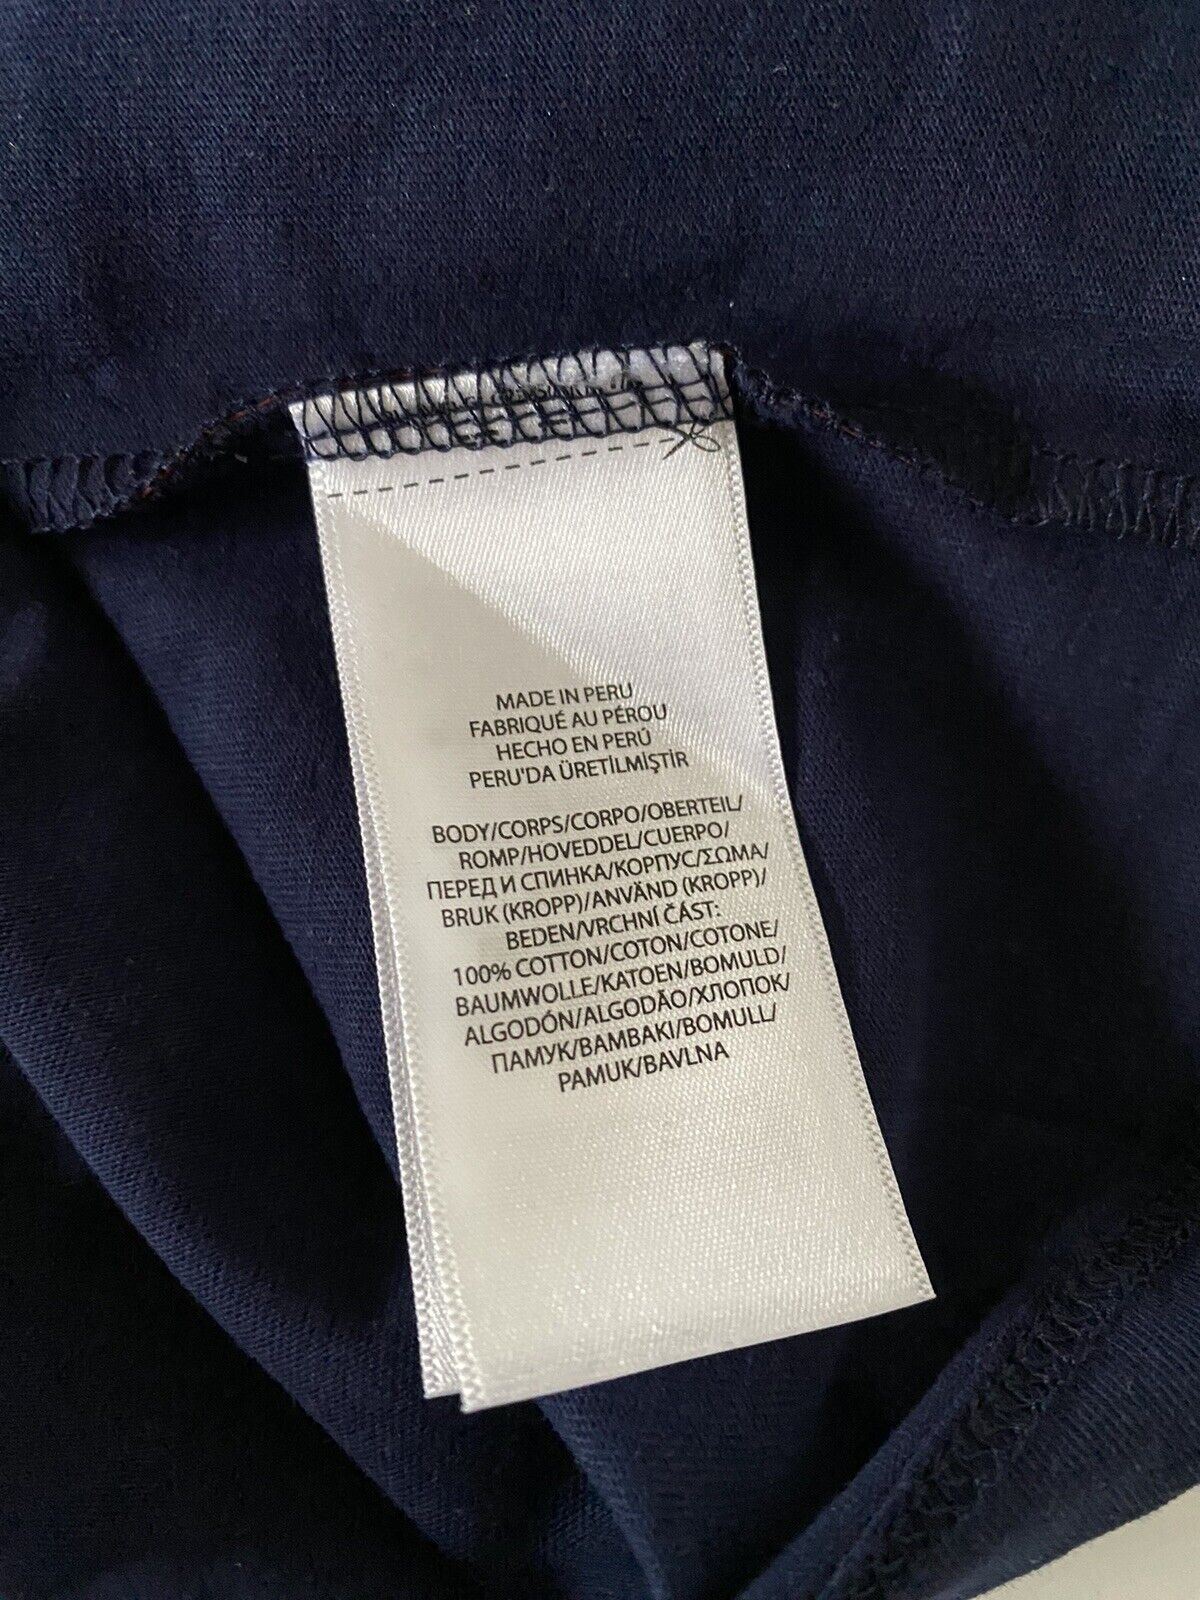 Синяя большая футболка с короткими рукавами и логотипом Polo Ralph Lauren, NWT 65 долларов США 